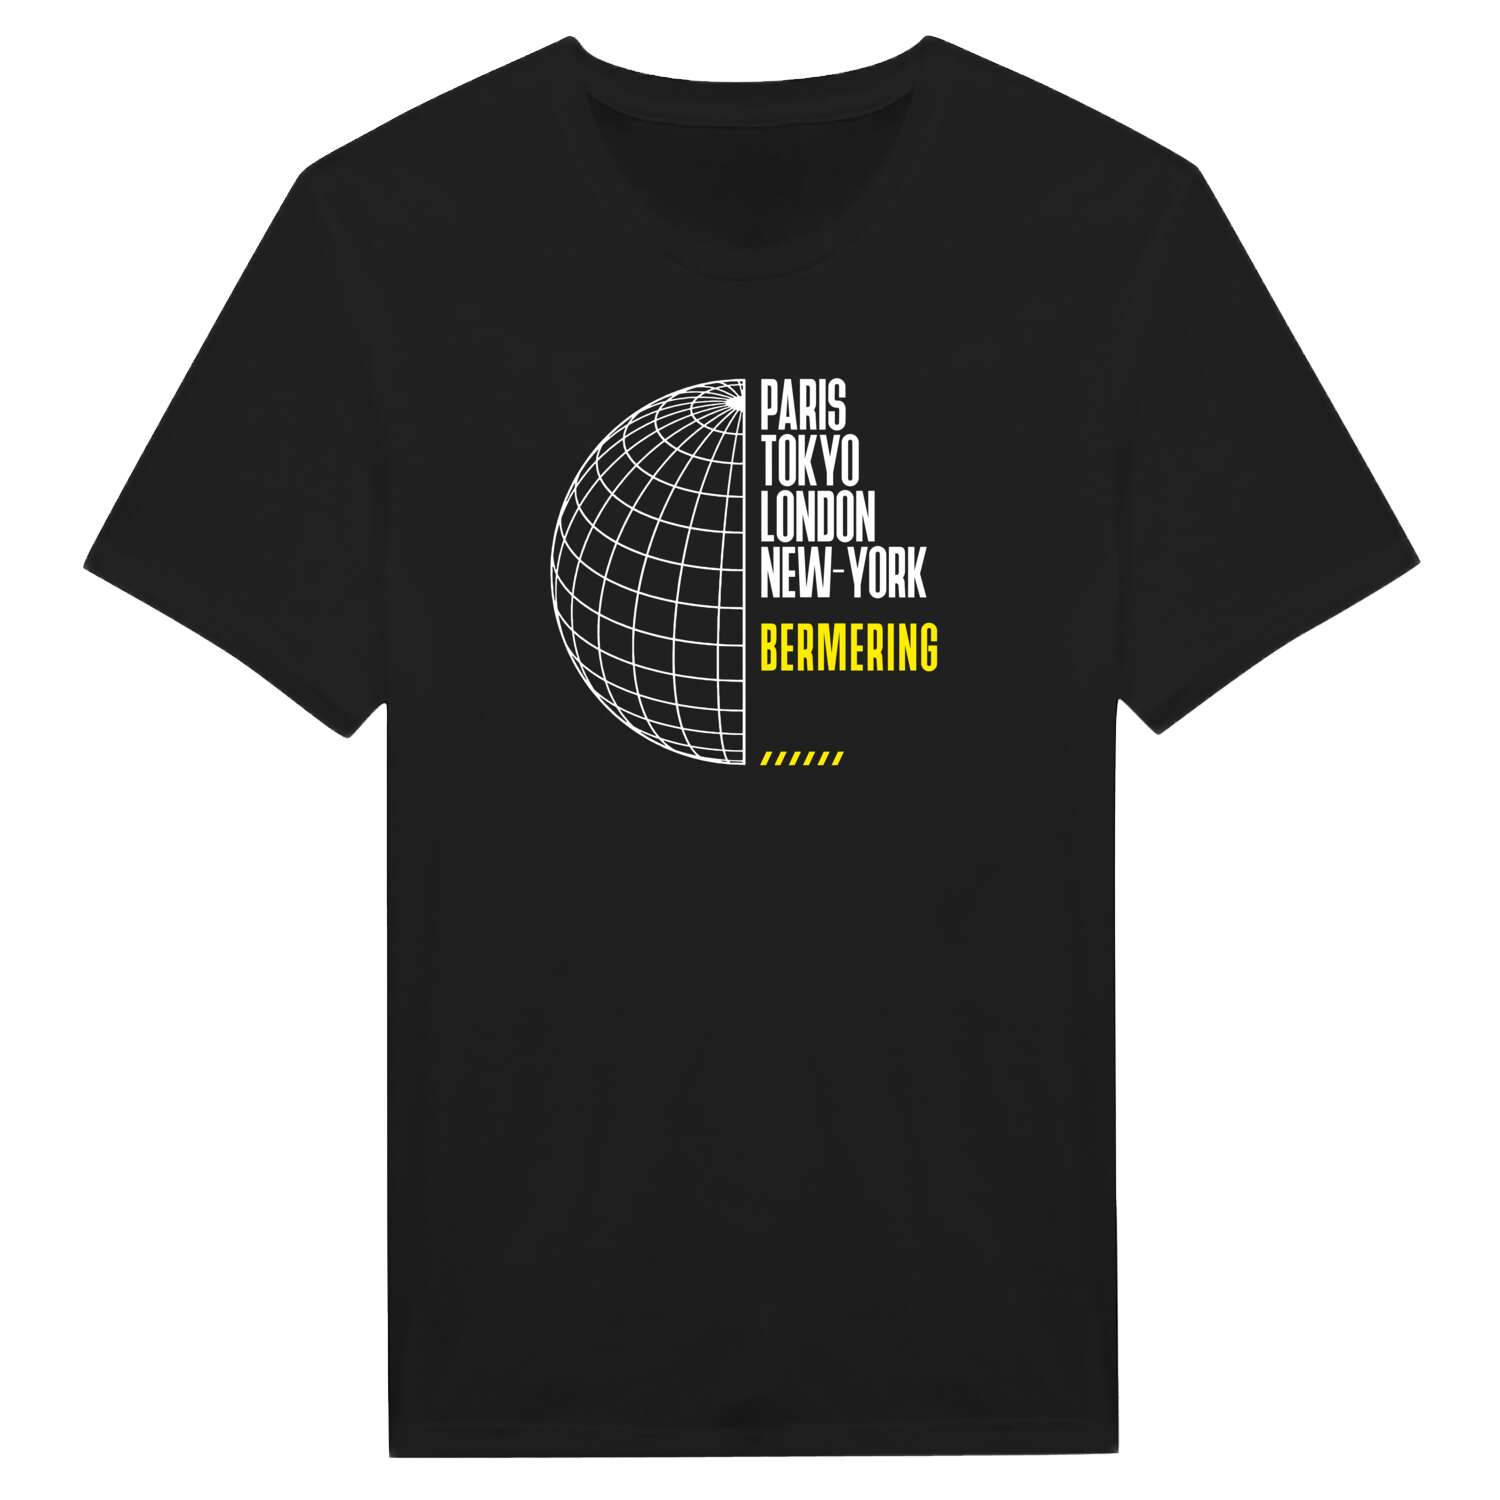 Bermering T-Shirt »Paris Tokyo London«